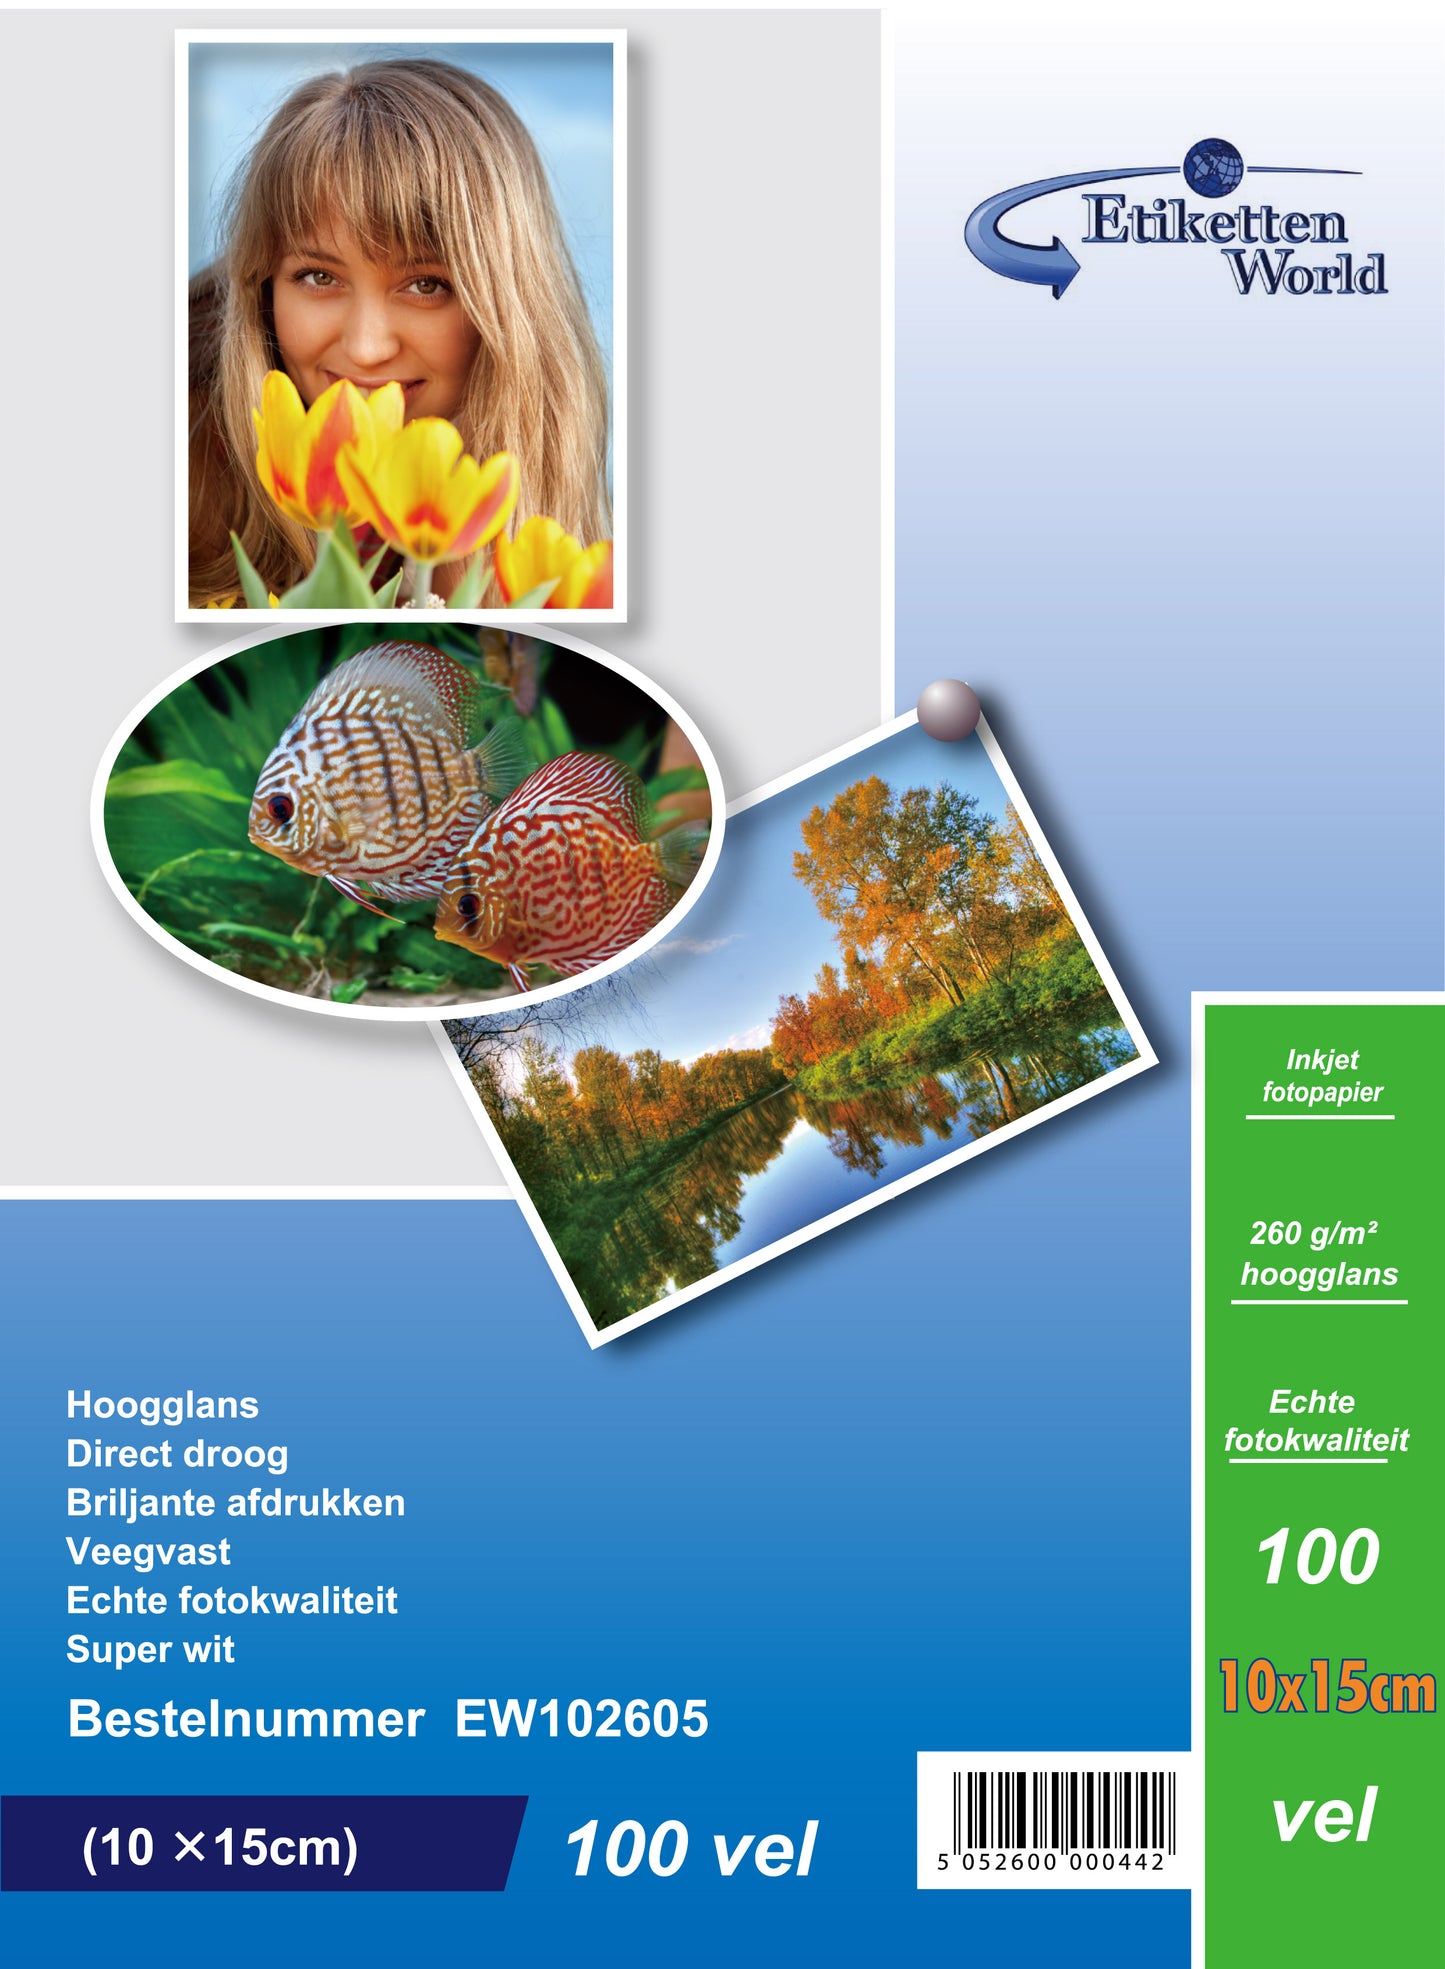 100 Blatt EtikettenWorld BV Fotopapier/ Fotokarten  10x15 cm 260g/qm High Glossy und wasserfest